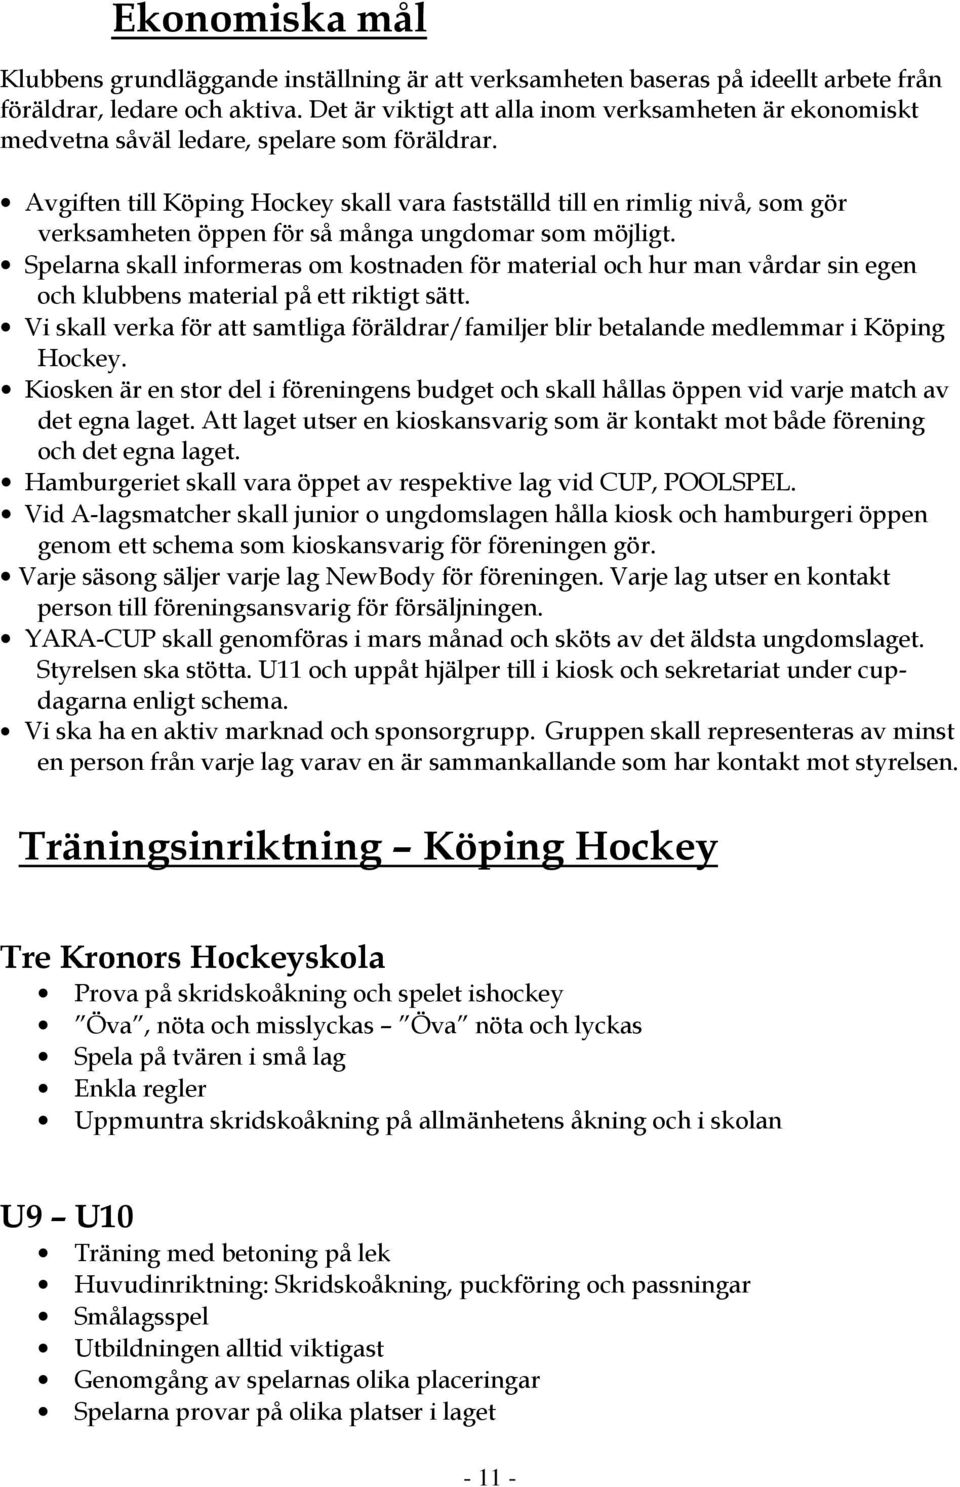 Avgiften till Köping Hockey skall vara fastställd till en rimlig nivå, som gör verksamheten öppen för så många ungdomar som möjligt.